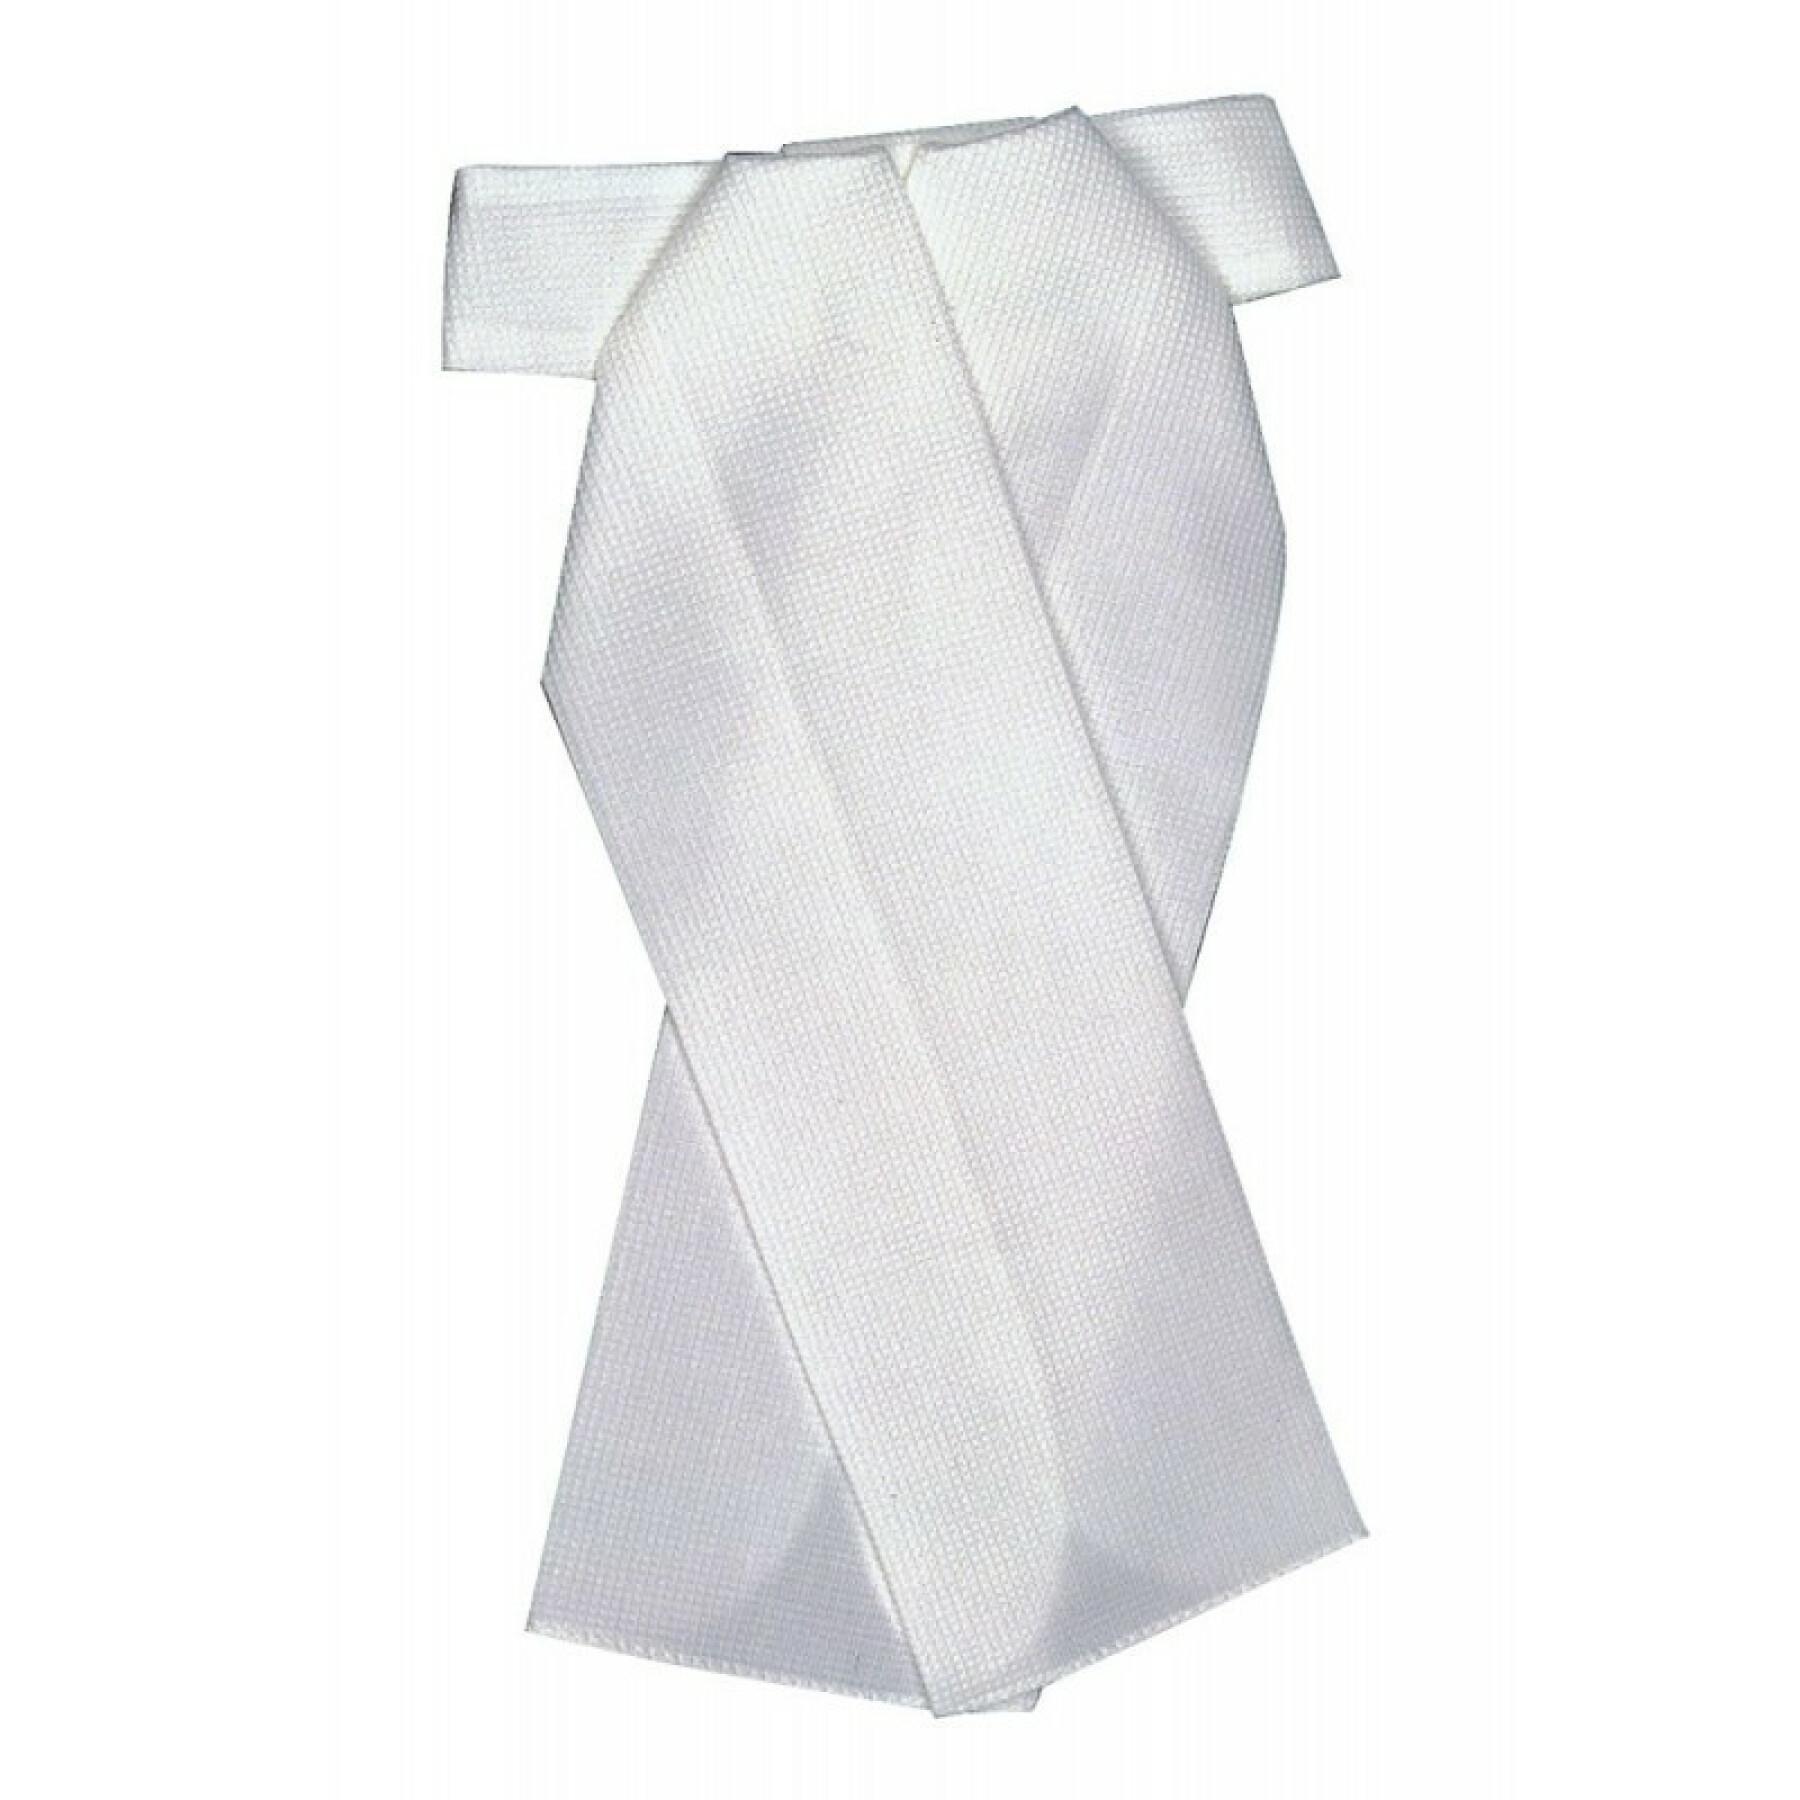 Wstępnie zawiązany krawat myśliwski Equithème